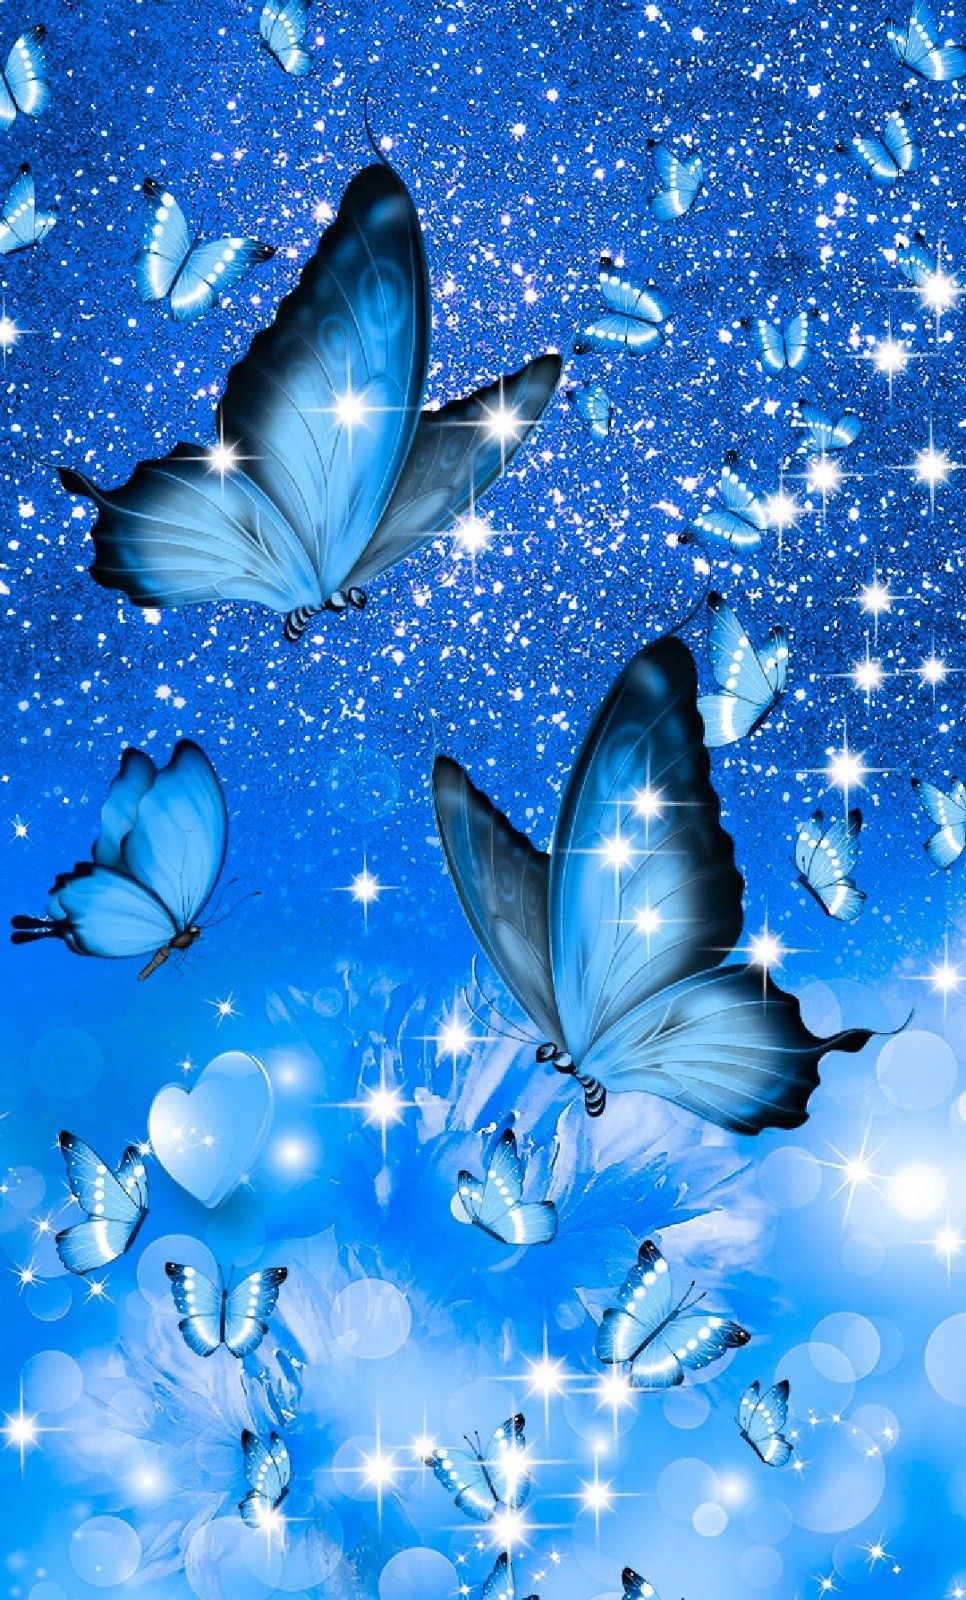 Mariposas. Blue butterfly wallpaper, Butterfly wallpaper iphone, Dream catcher wallpaper iphone